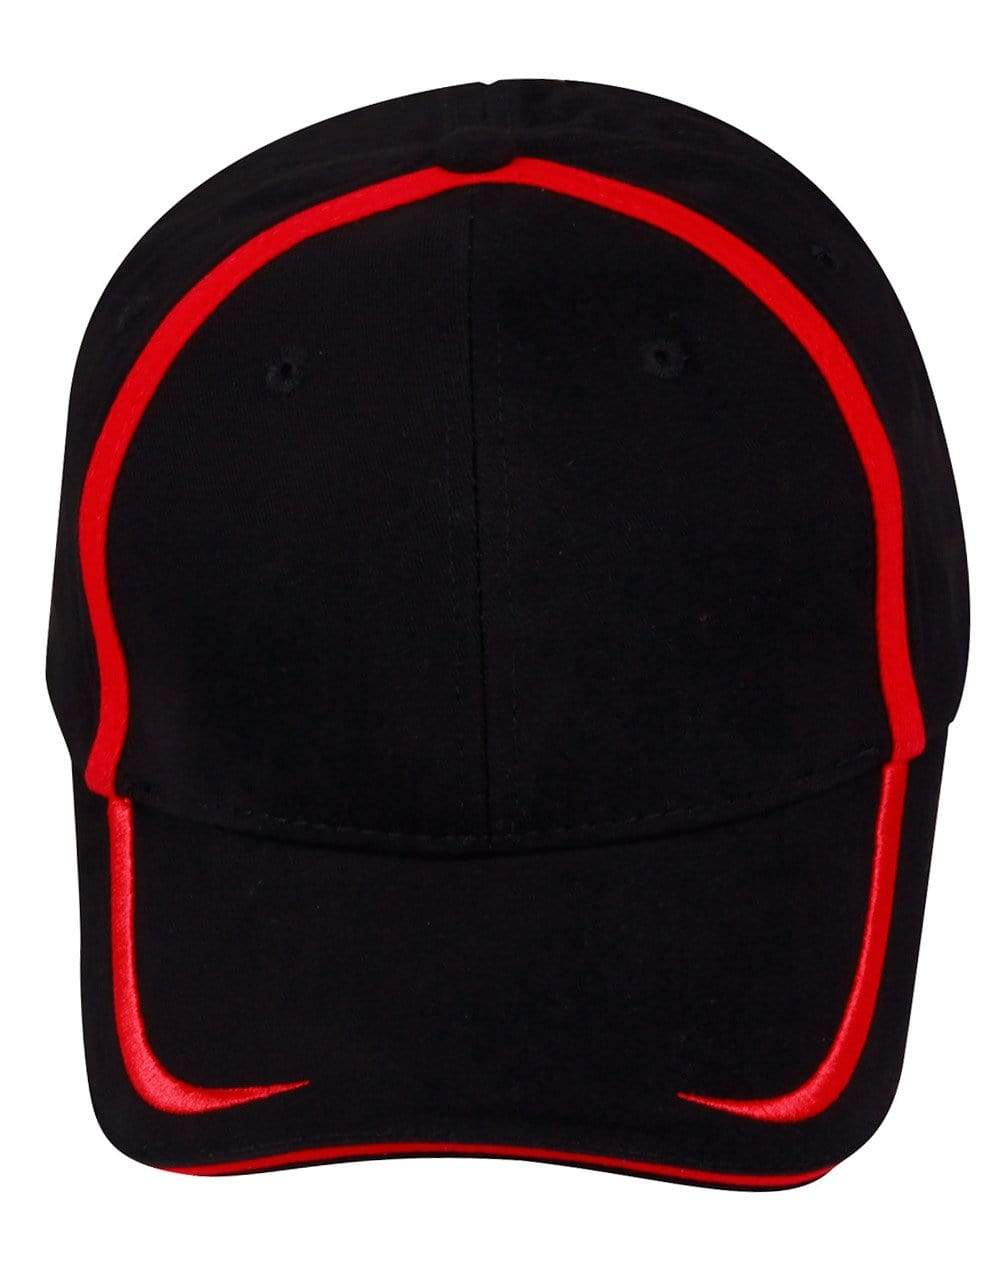 Winning Spirit Active Wear Black/Red / One size Contrasst Trim Cap Ch75